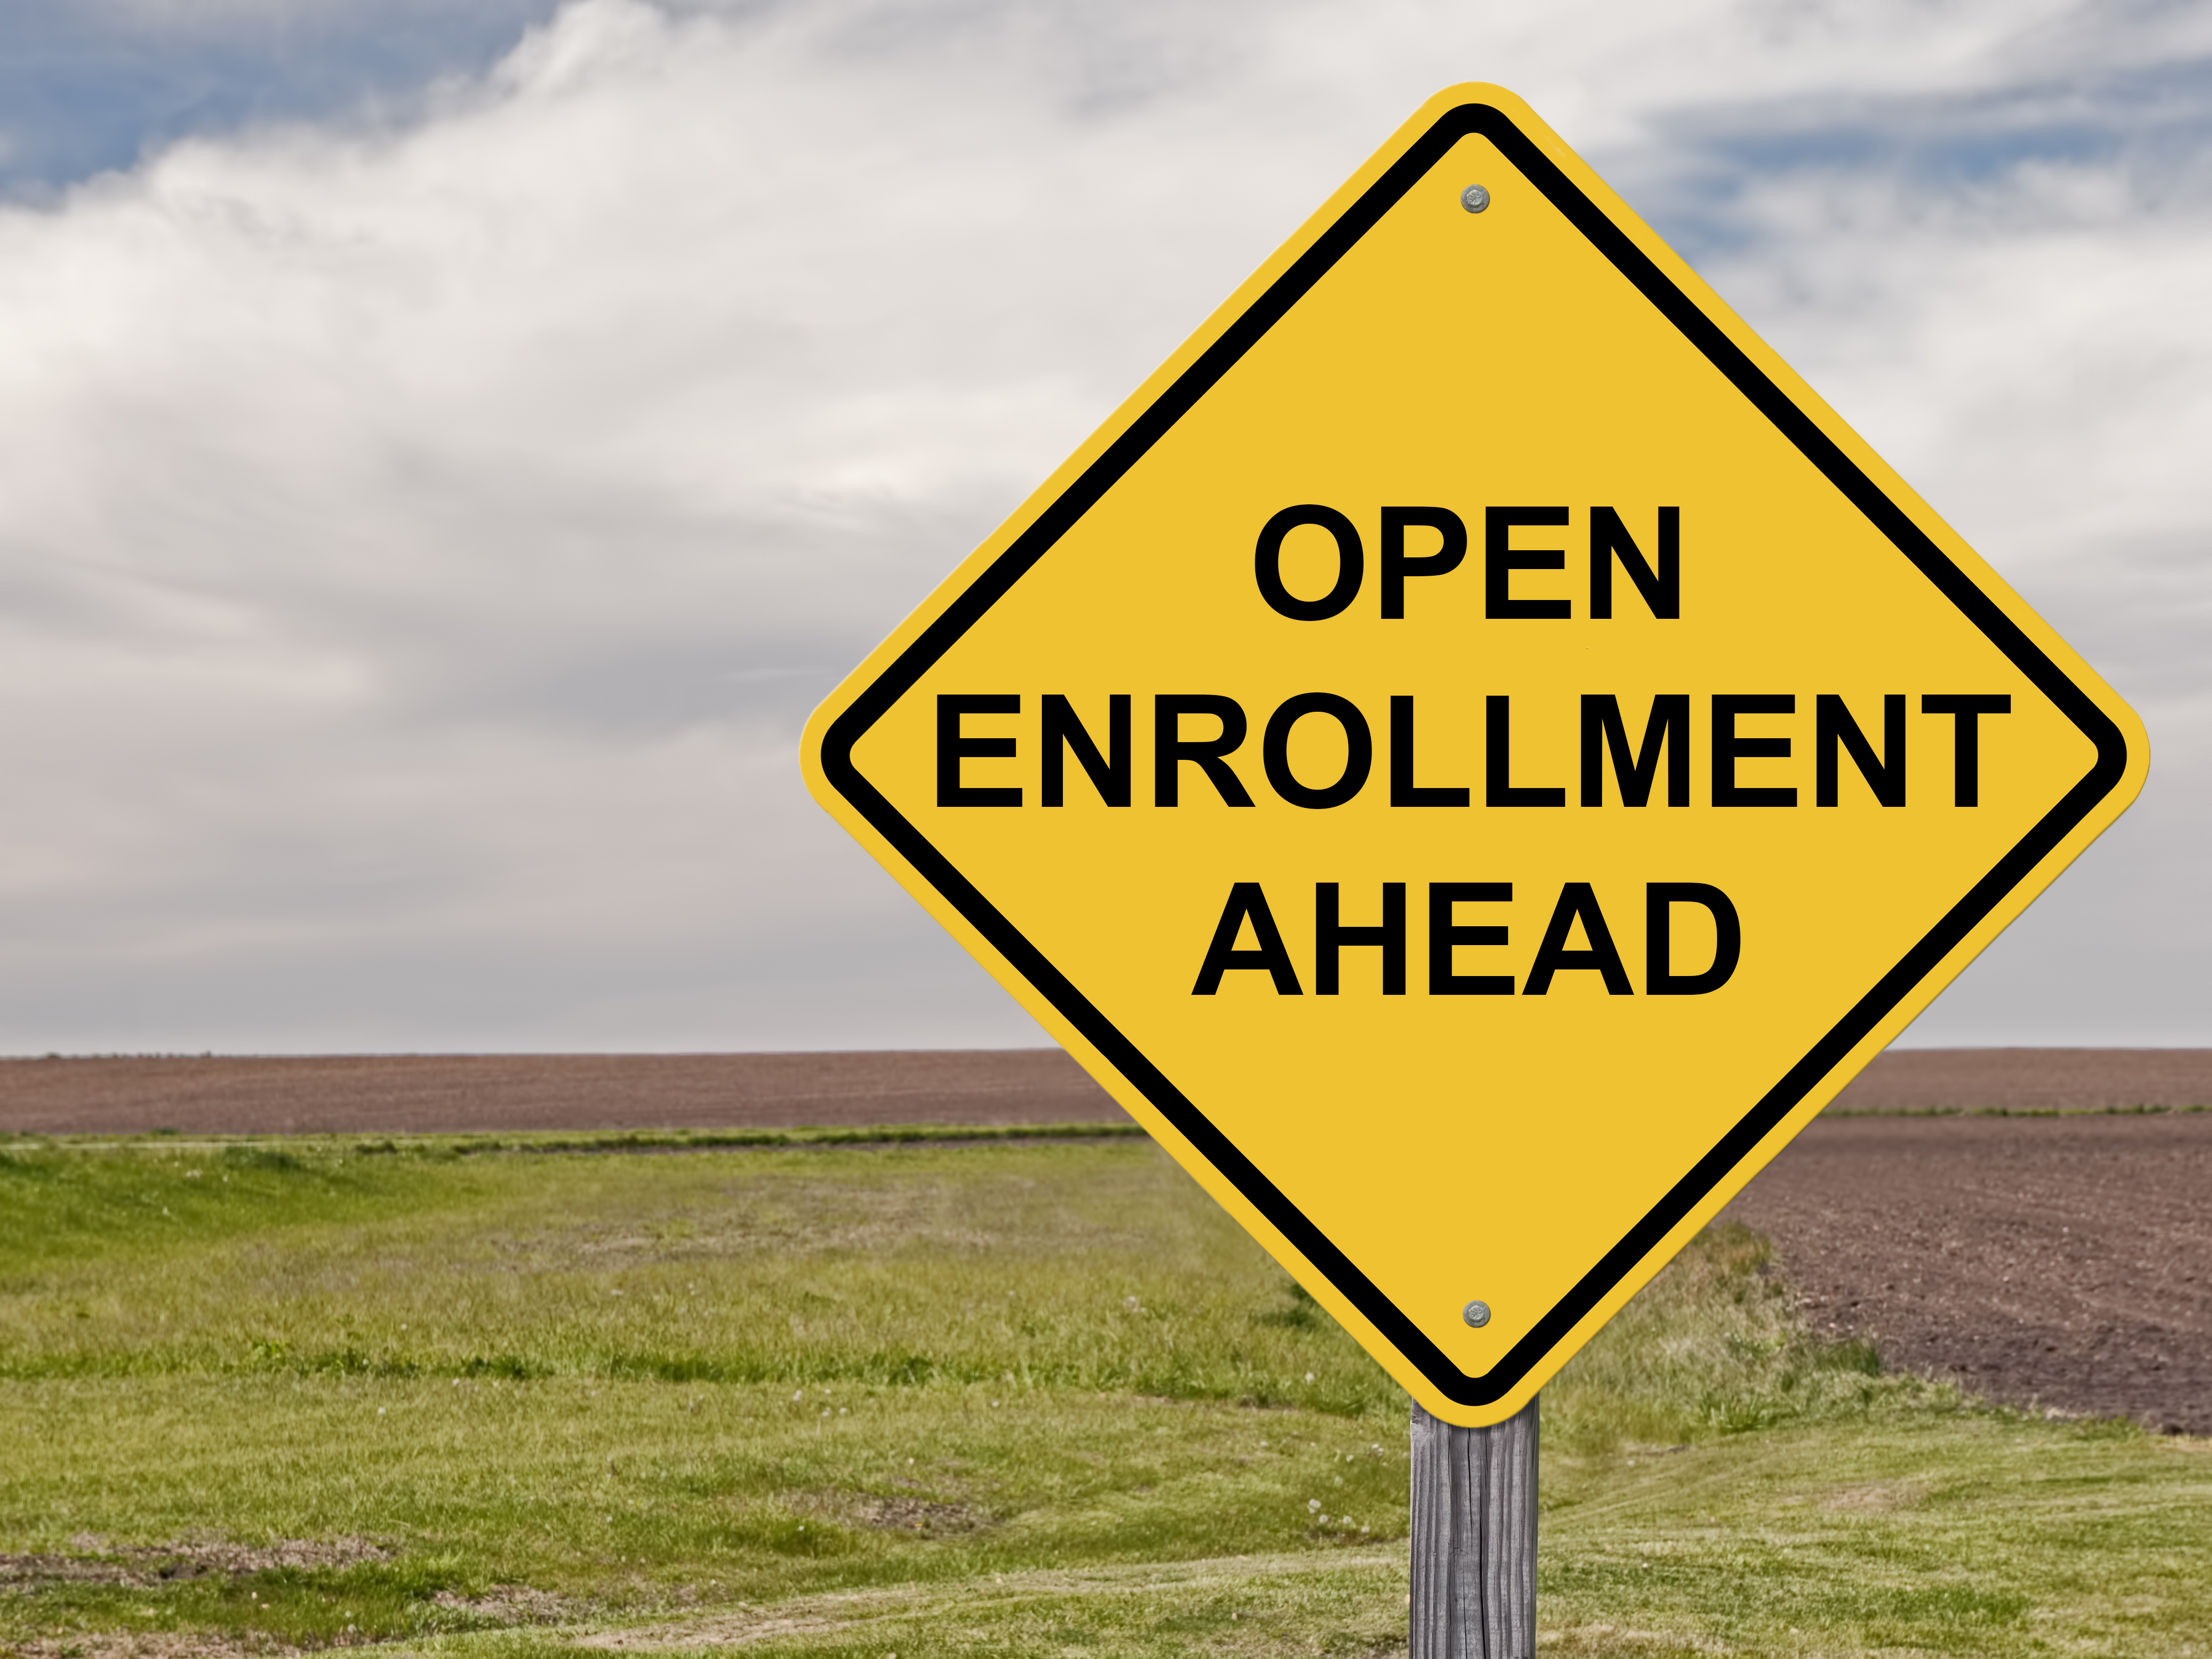 Open enrollment ahead sign 